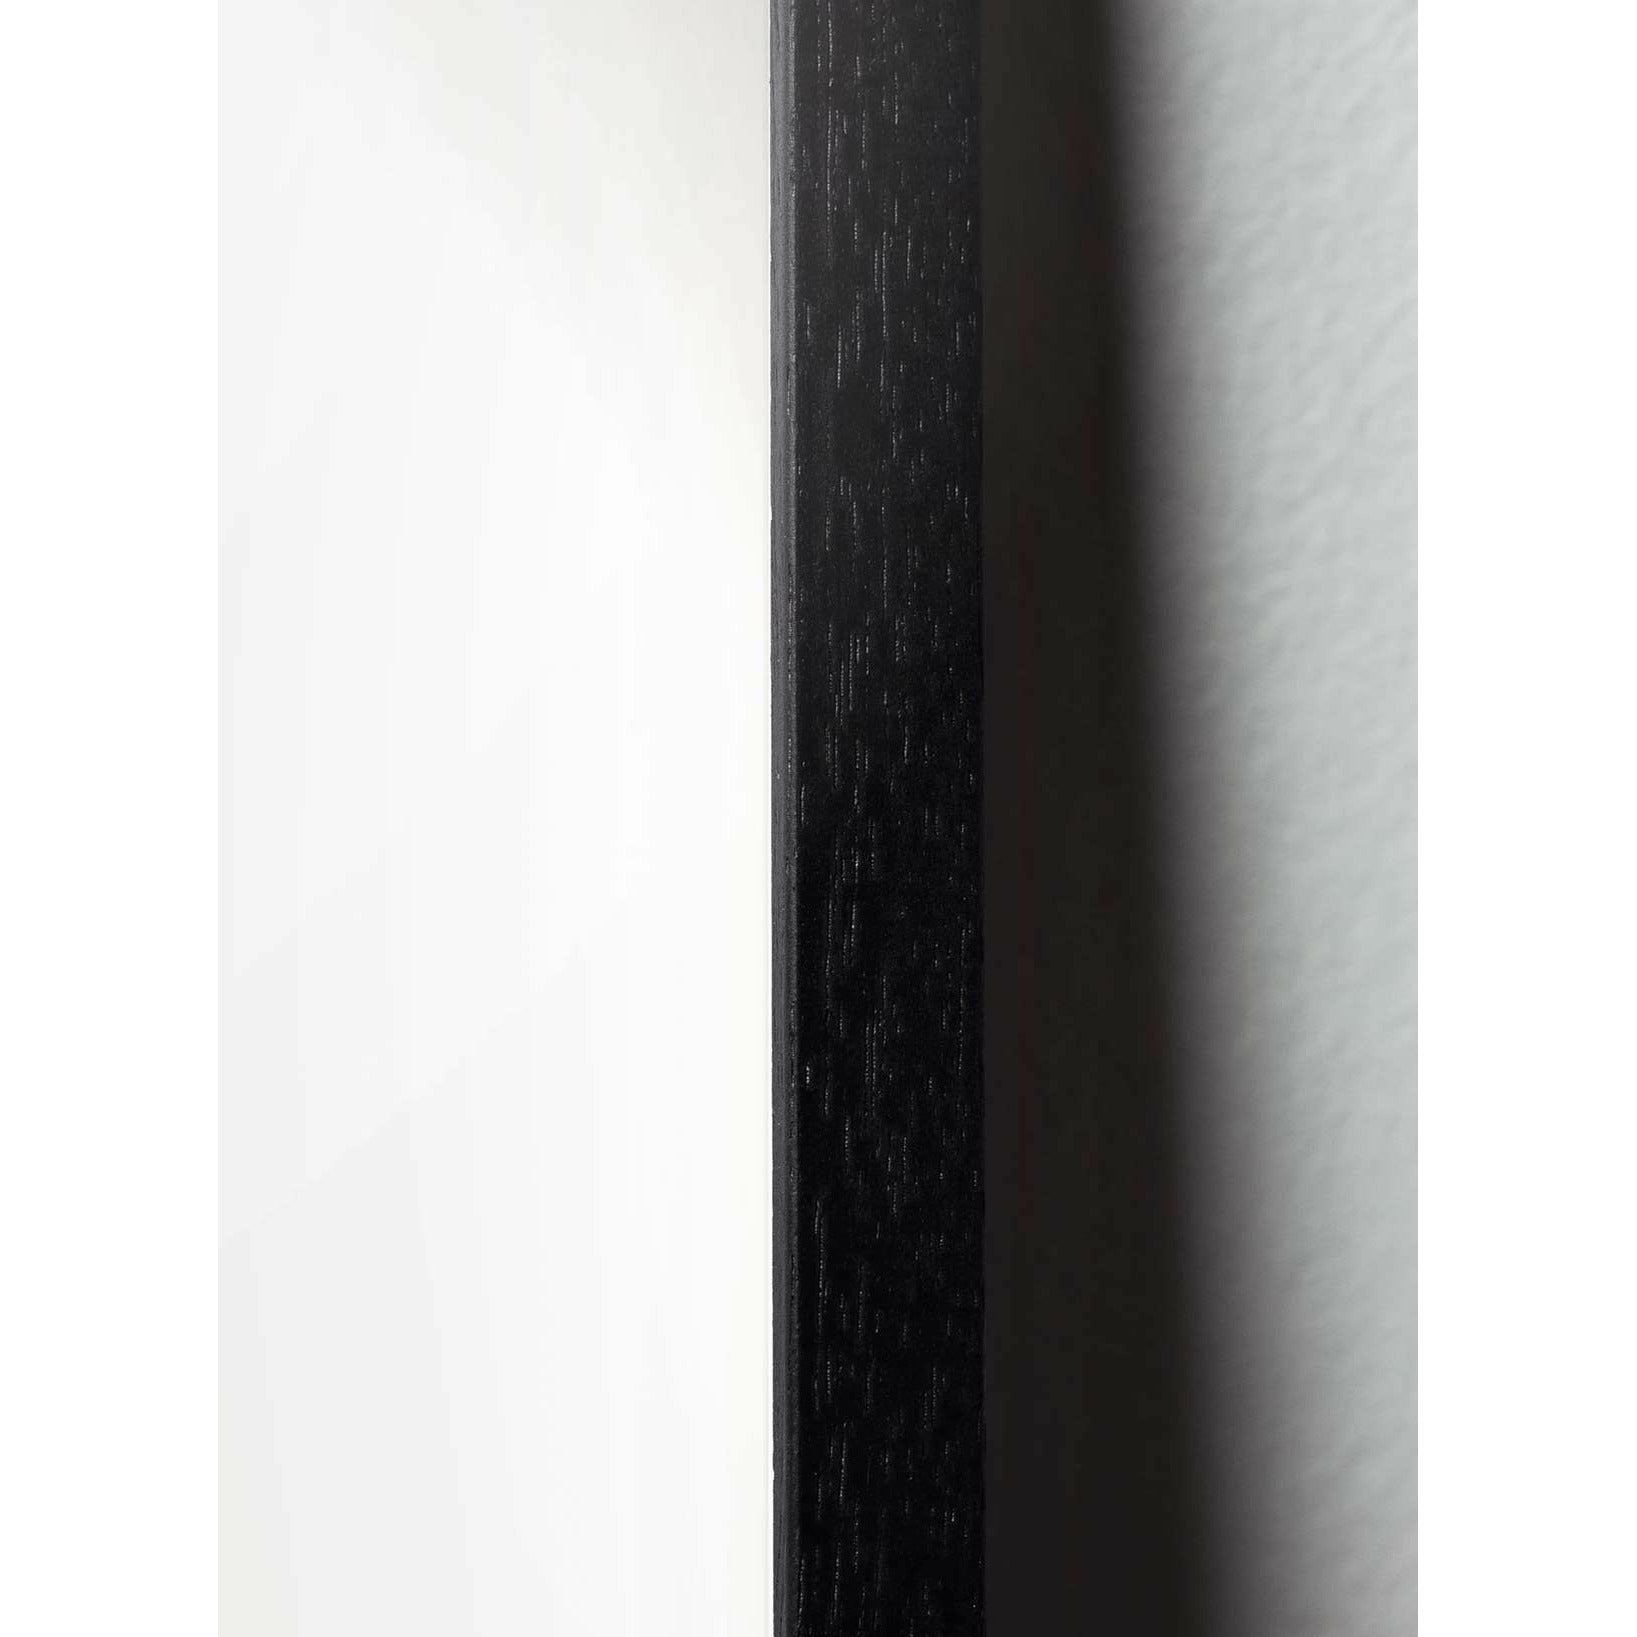 brainchild Munakuvioiden juliste, mustasta lakatusta puusta valmistettu runko 50x70 cm, ruskea